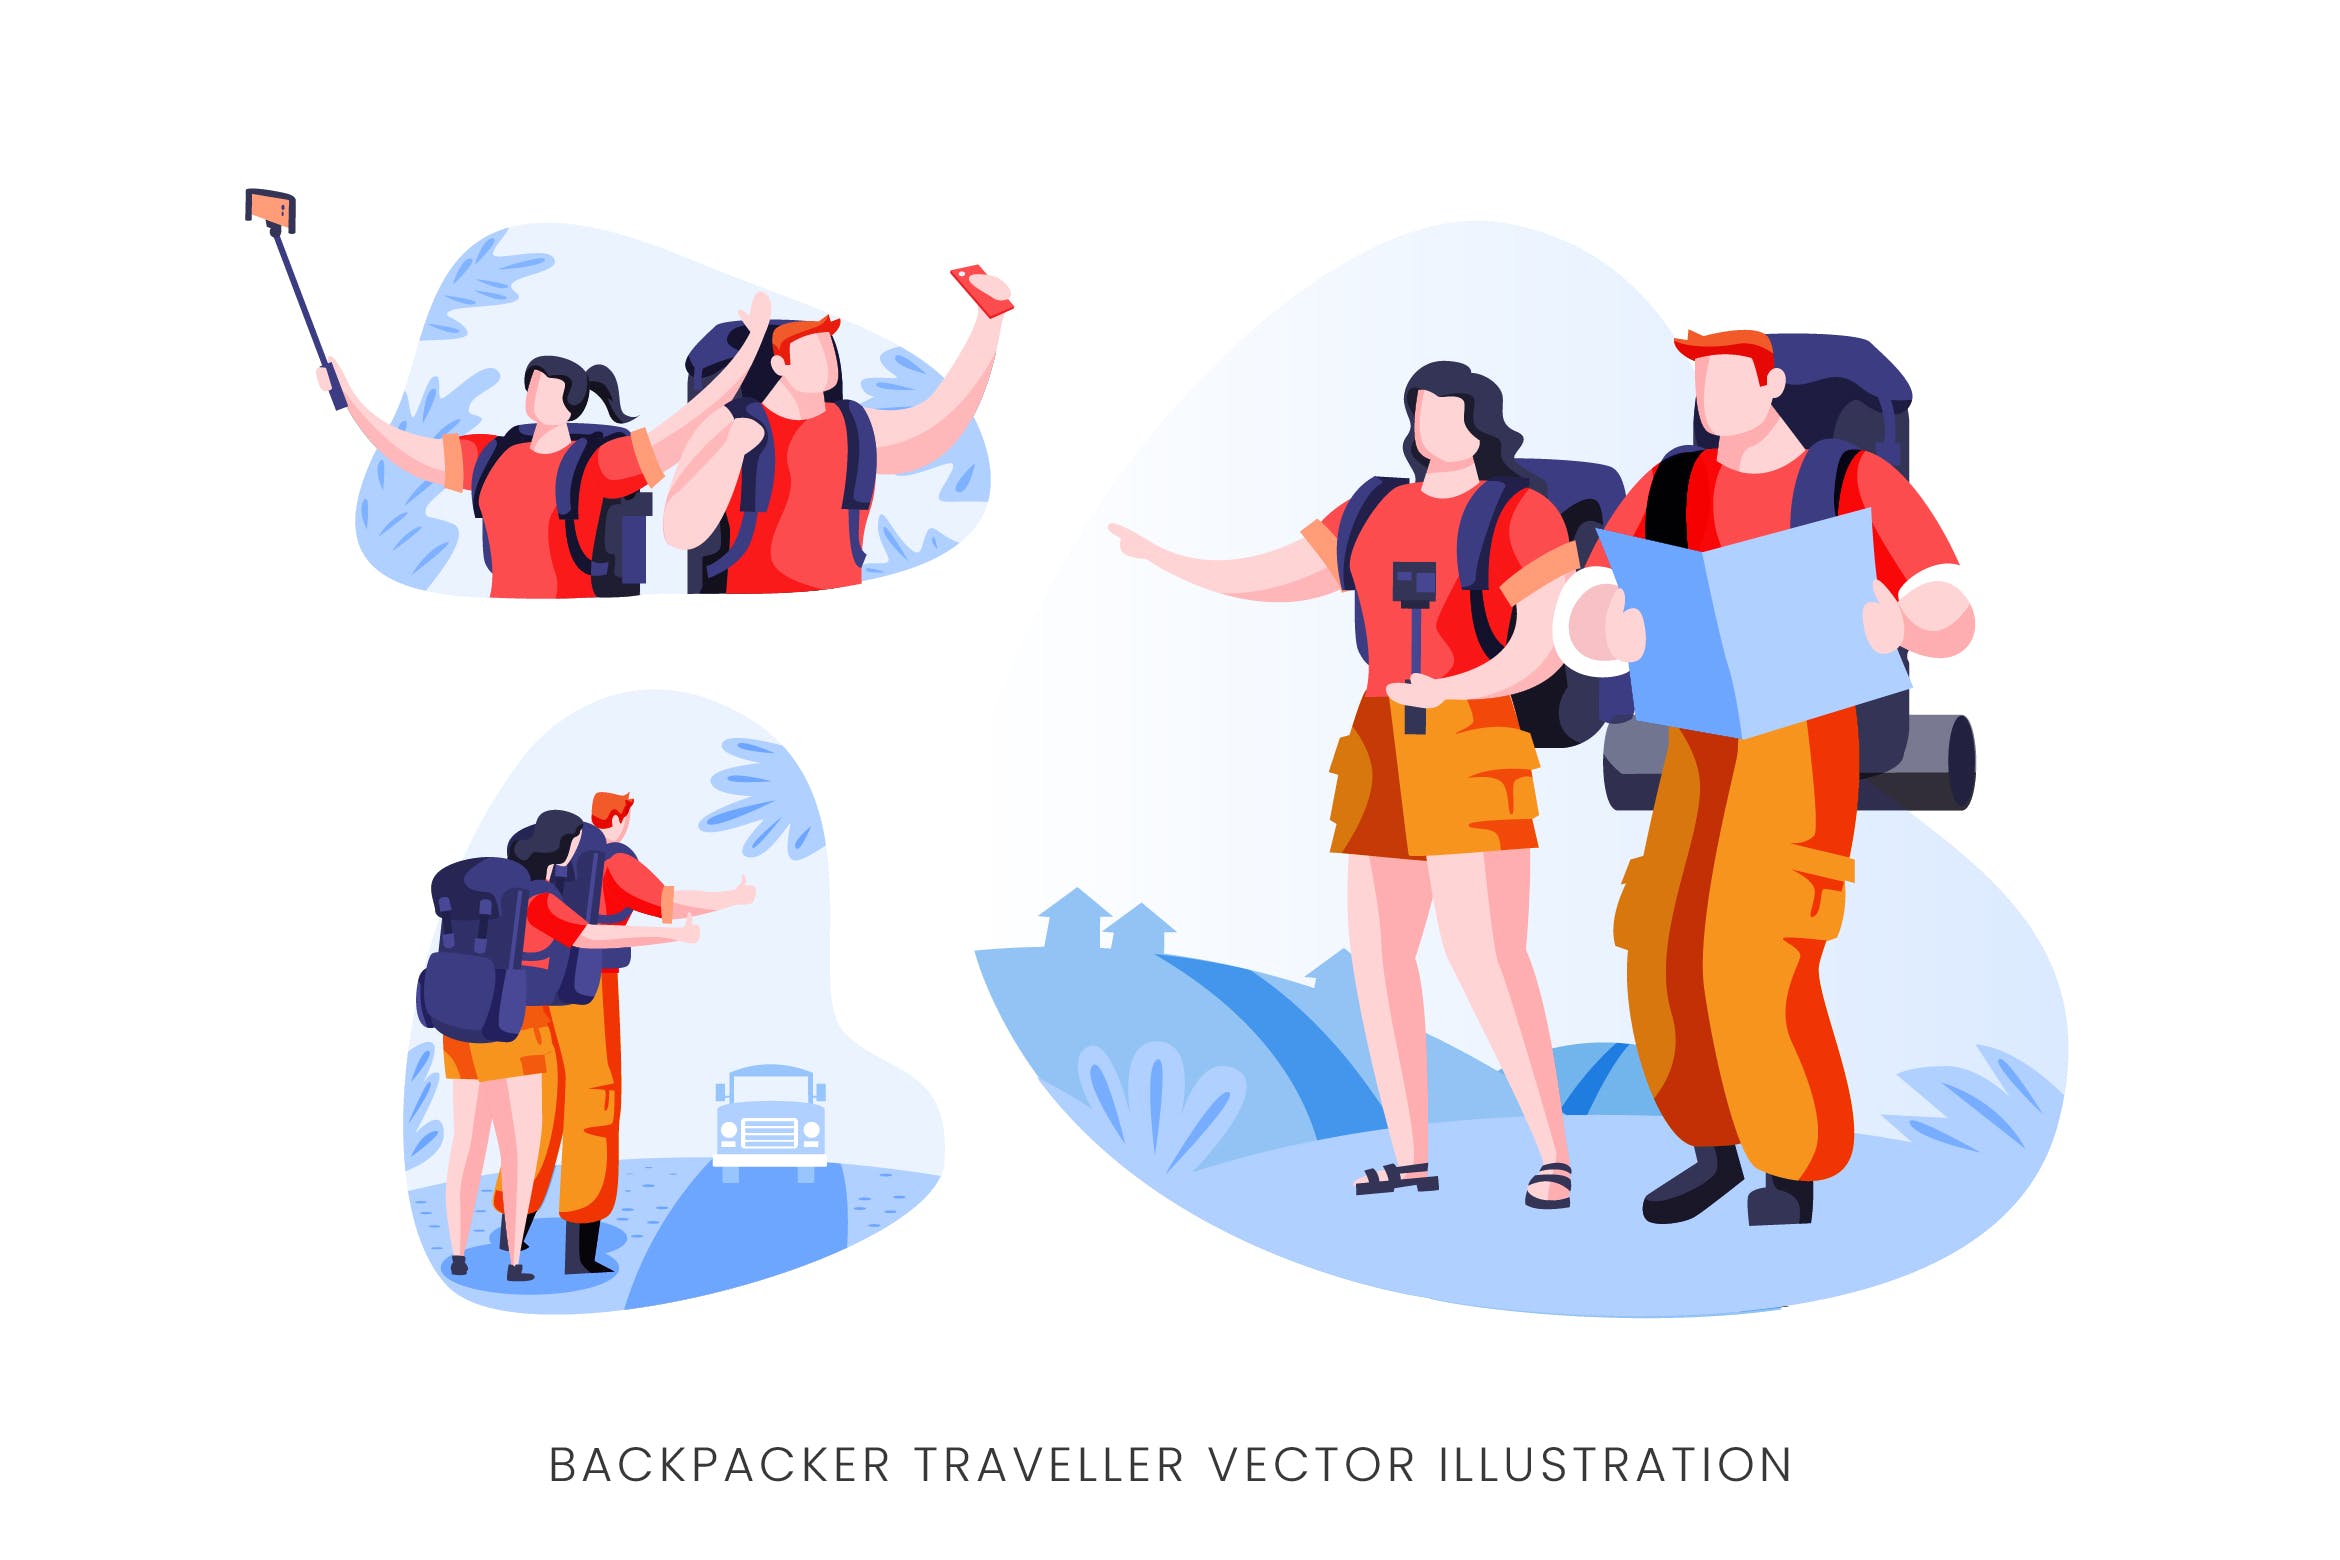 背包旅行者人物形象矢量手绘素材 Backpacker Traveller Vector Character Set插图